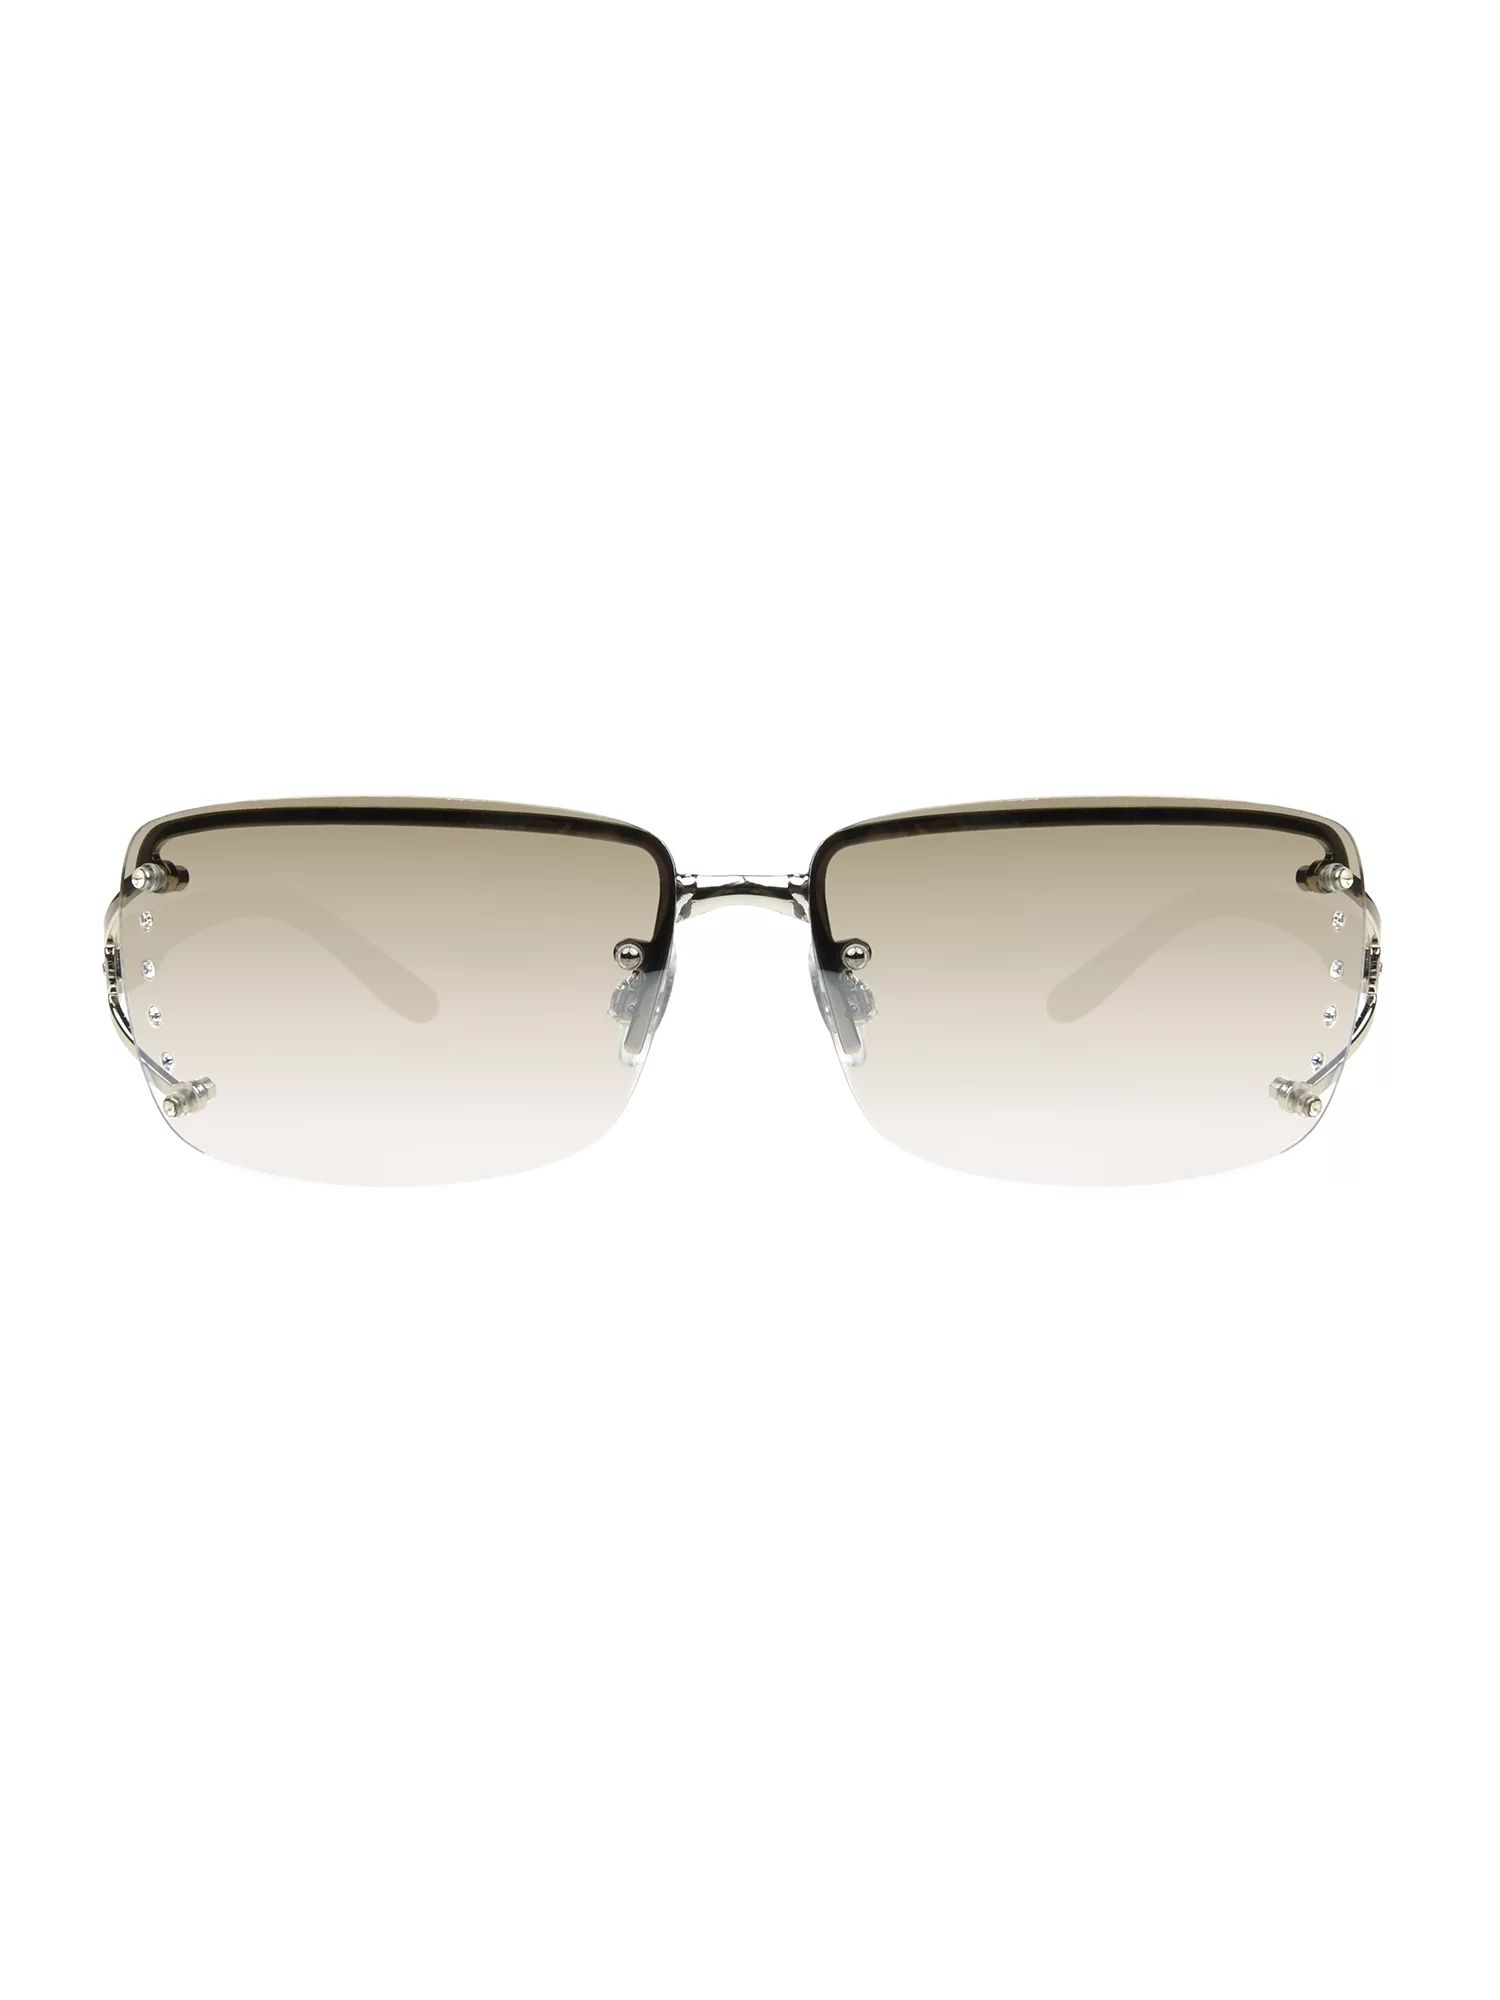 Foster Grant Women's Rimless Fashion Sunglasses Silver | Walmart (US)